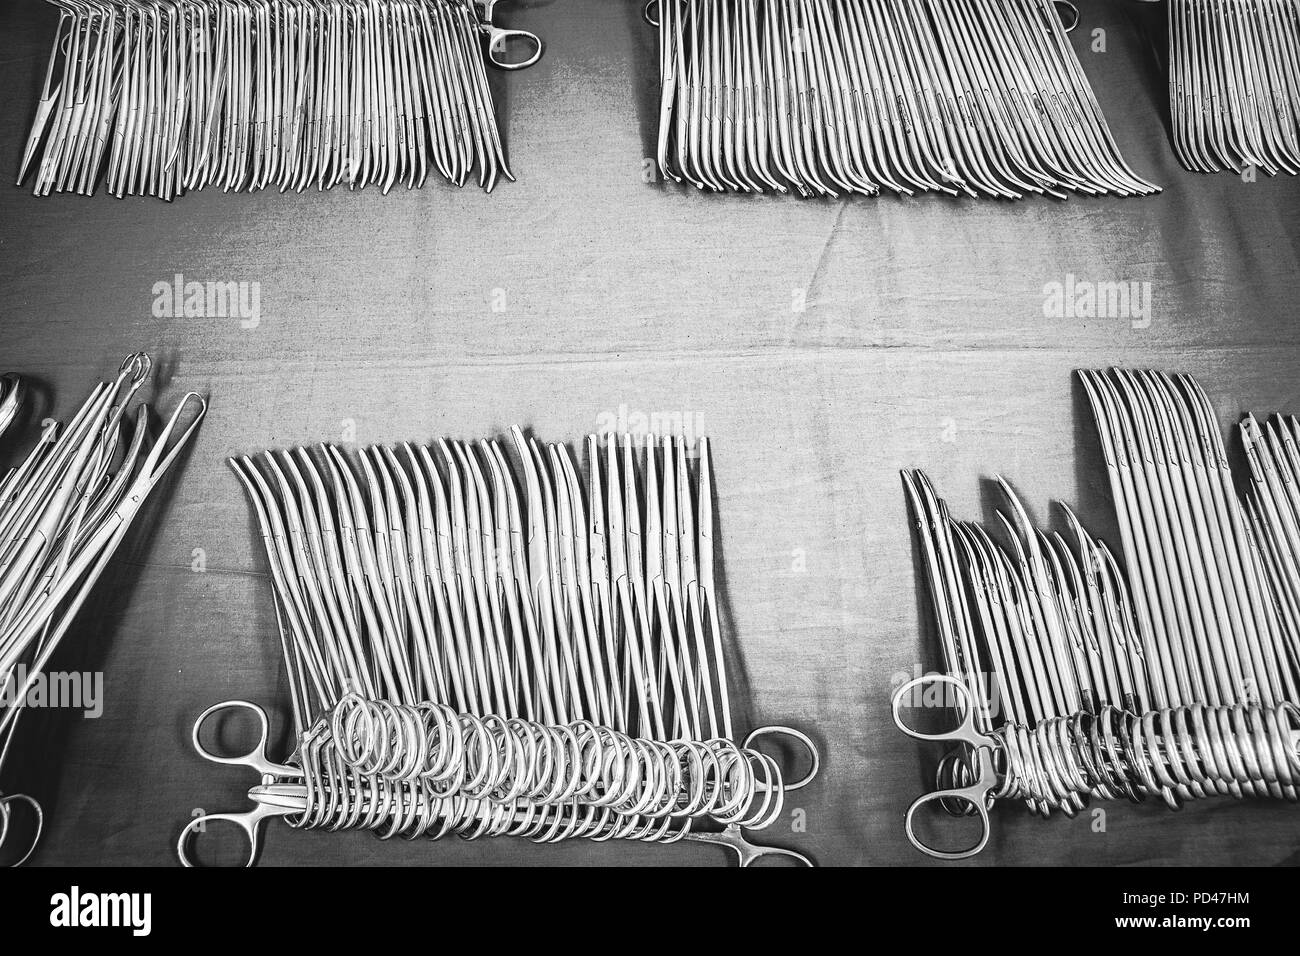 Strumenti chirurgici sterili sul tavolo. Vista superiore Foto Stock